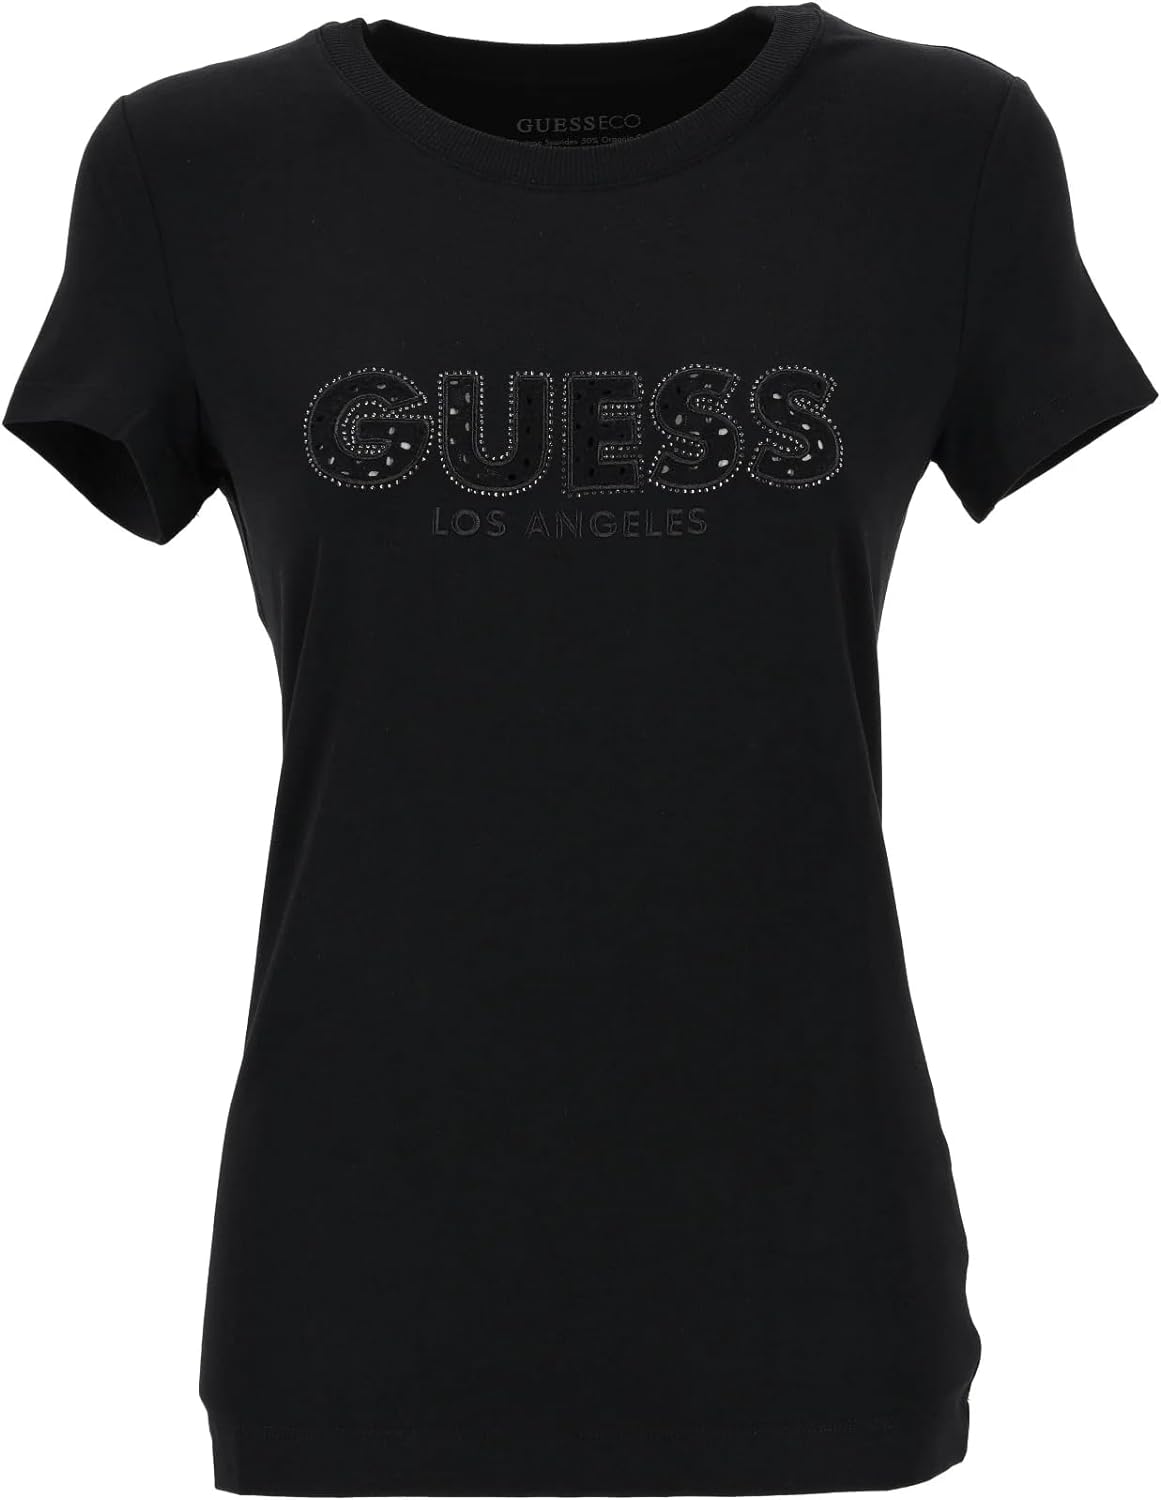 GUESS T-shirt Donna - Nero modello W4GI14J1314